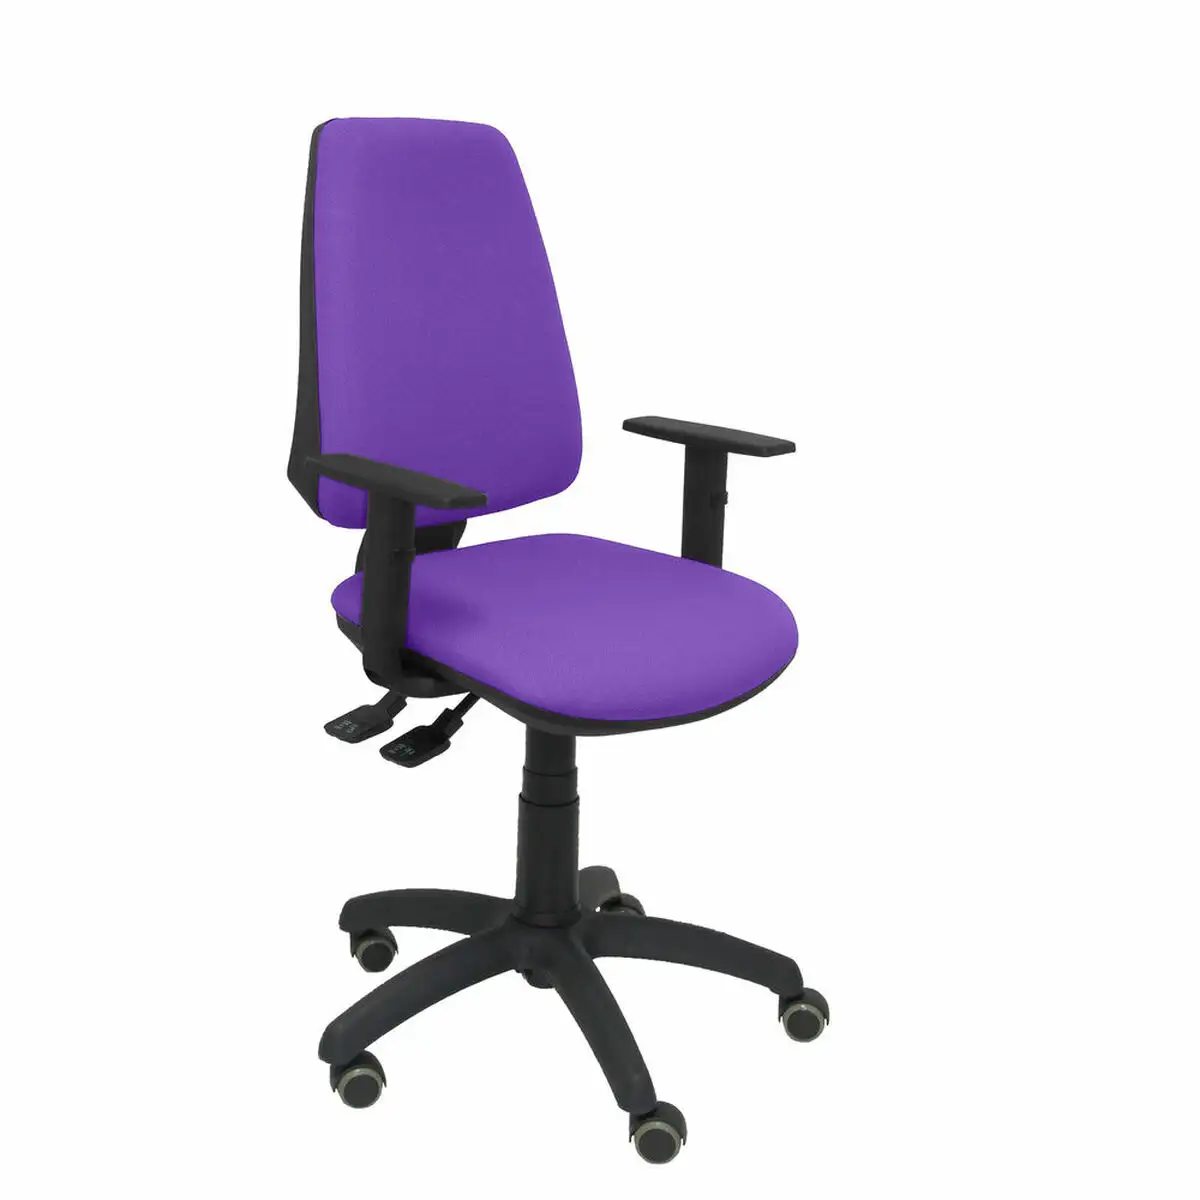 Chaise de bureau elche s bali p c 82b10rp violet lila_4221. Bienvenue sur DIAYTAR SENEGAL - Votre Galerie Shopping Personnalisée. Découvrez un monde de produits diversifiés qui expriment votre style unique et votre passion pour la qualité.